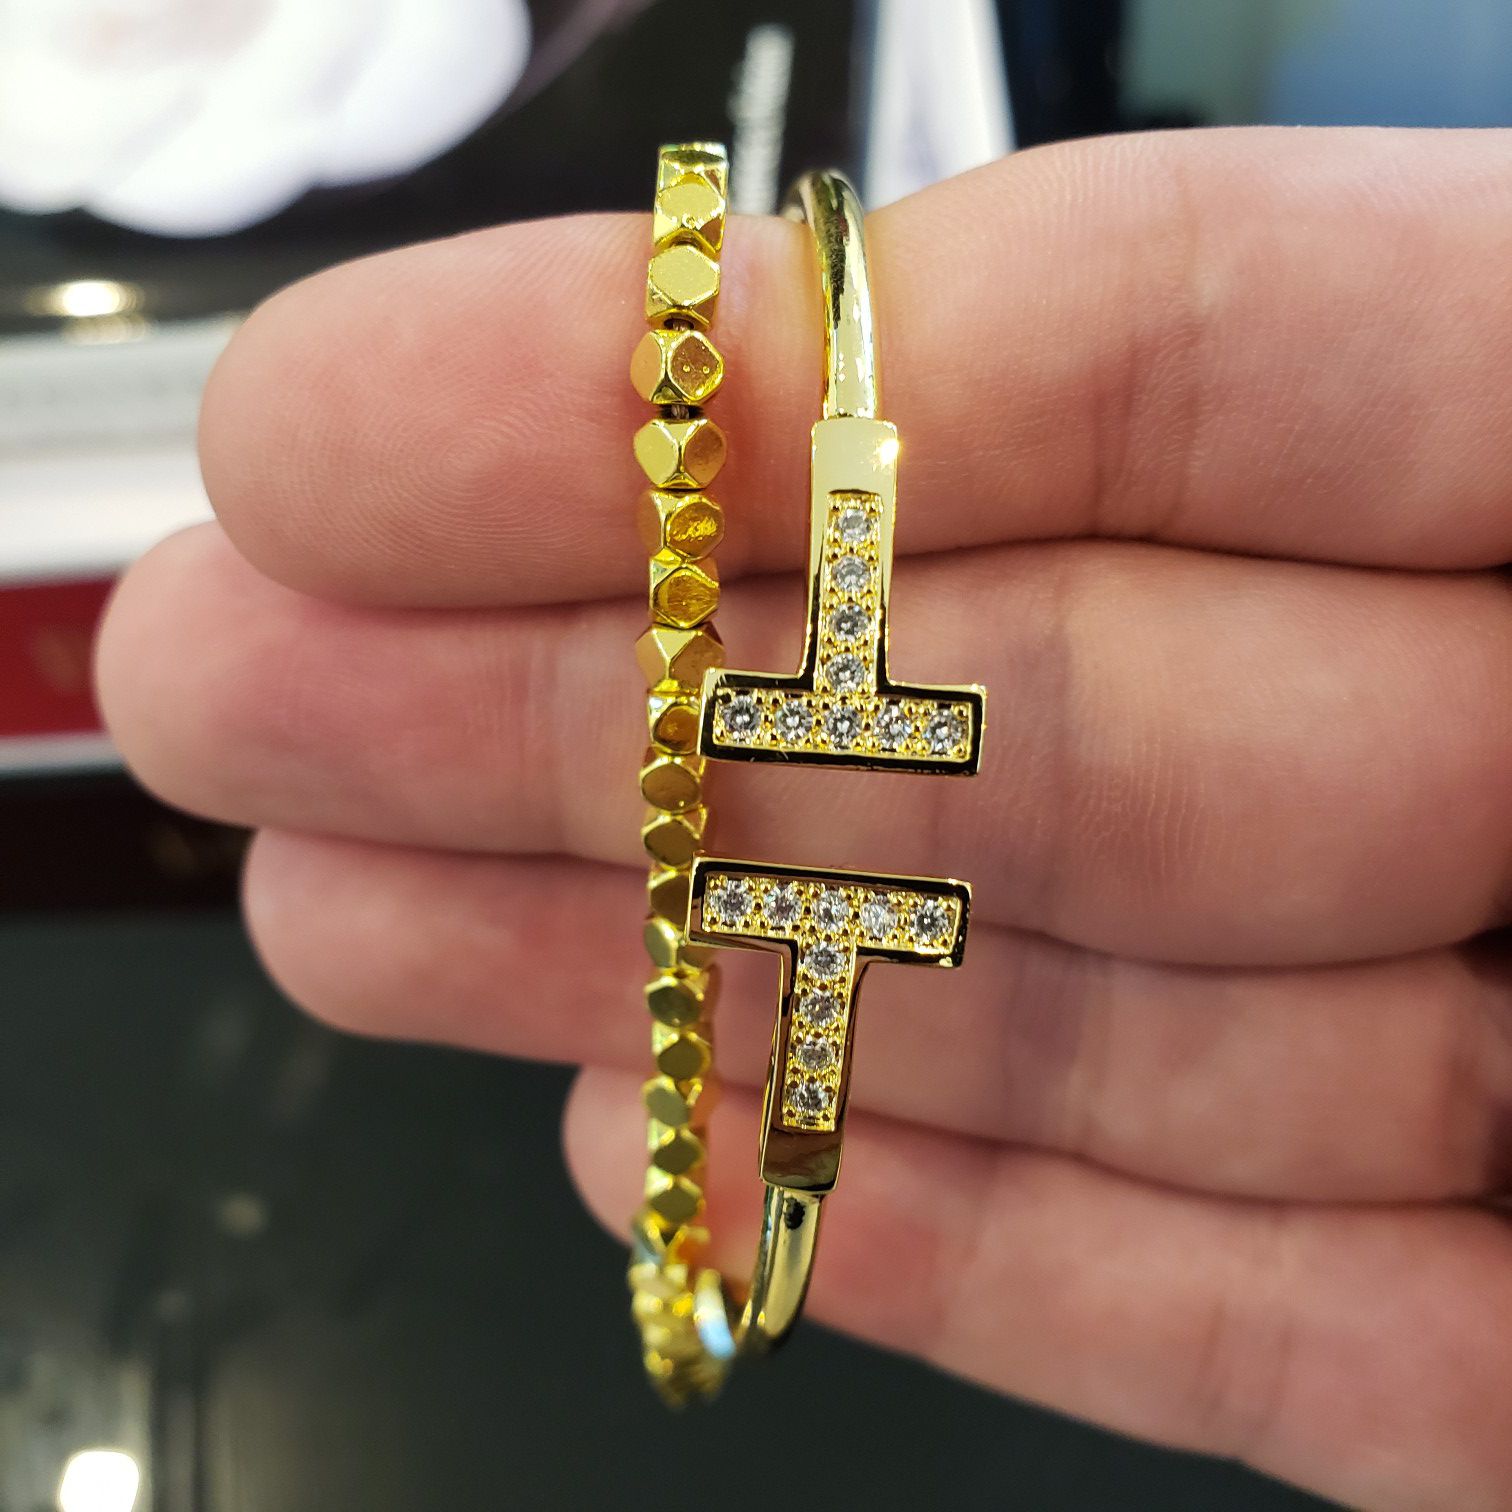 Tiffany style gold bracelet